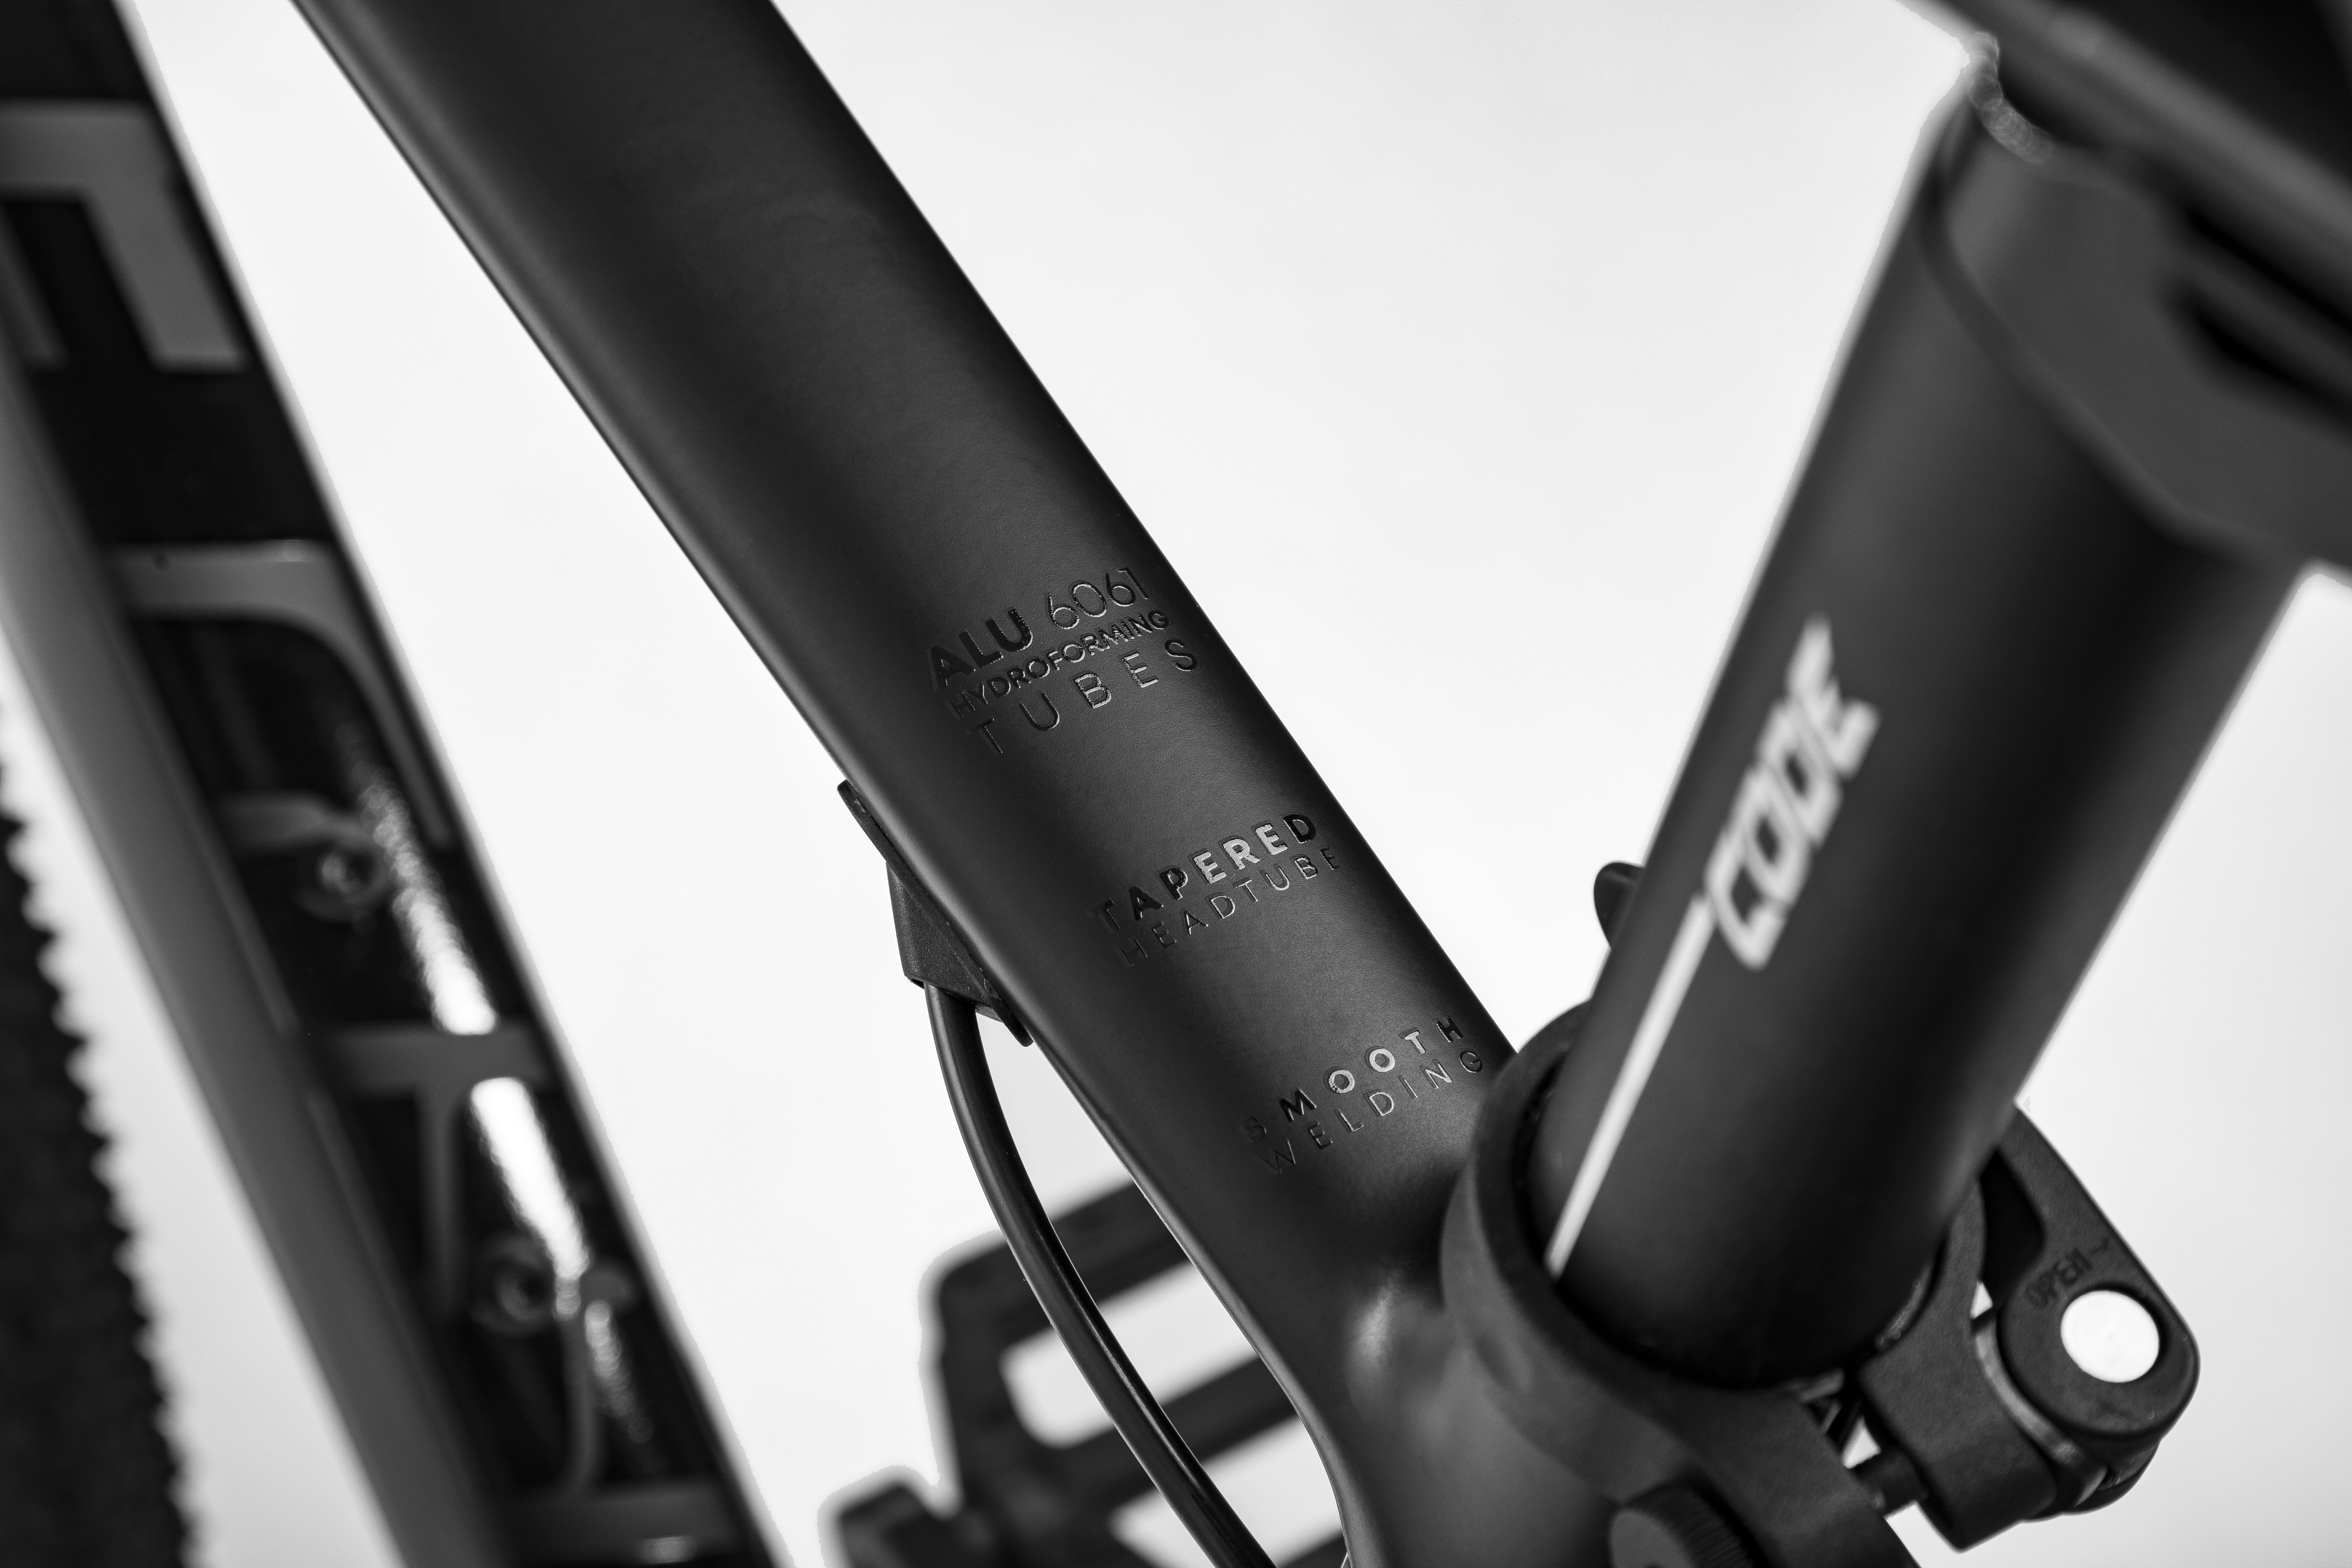 Велосипед Aspect AIR 27.5 16" Черный (2022)